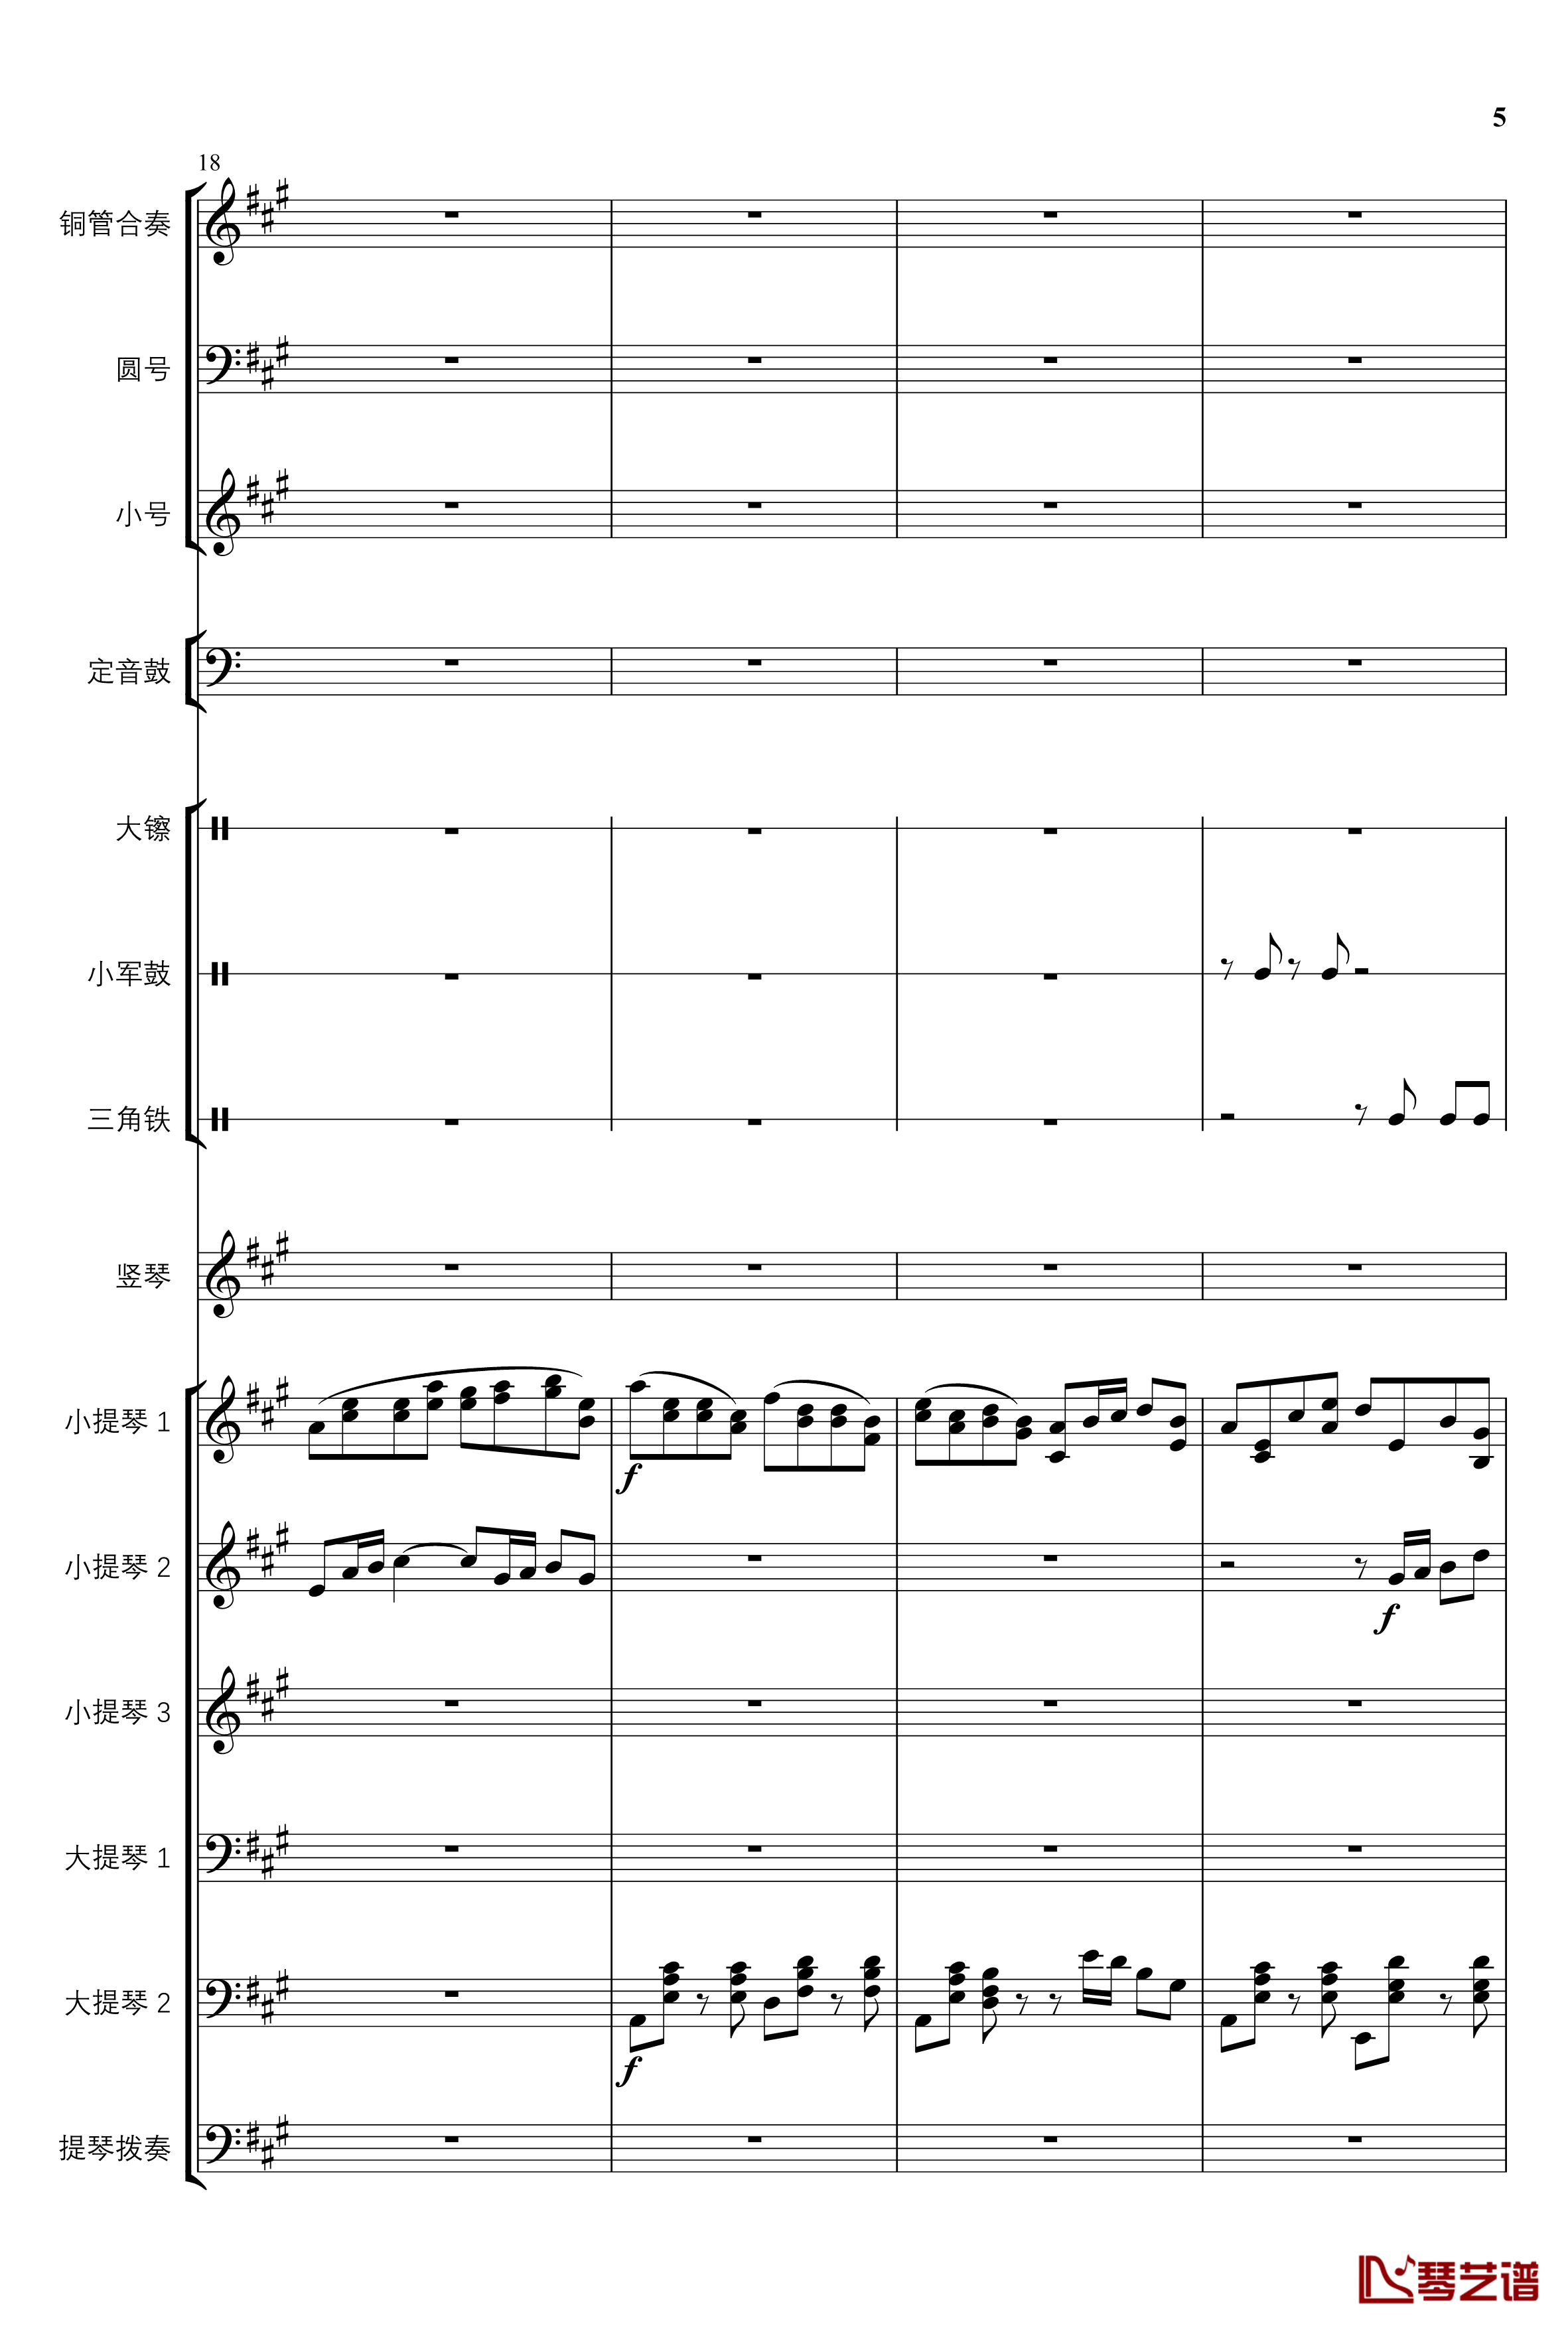 2013考试周的叙事曲钢琴谱-管弦乐重编曲版-江畔新绿5